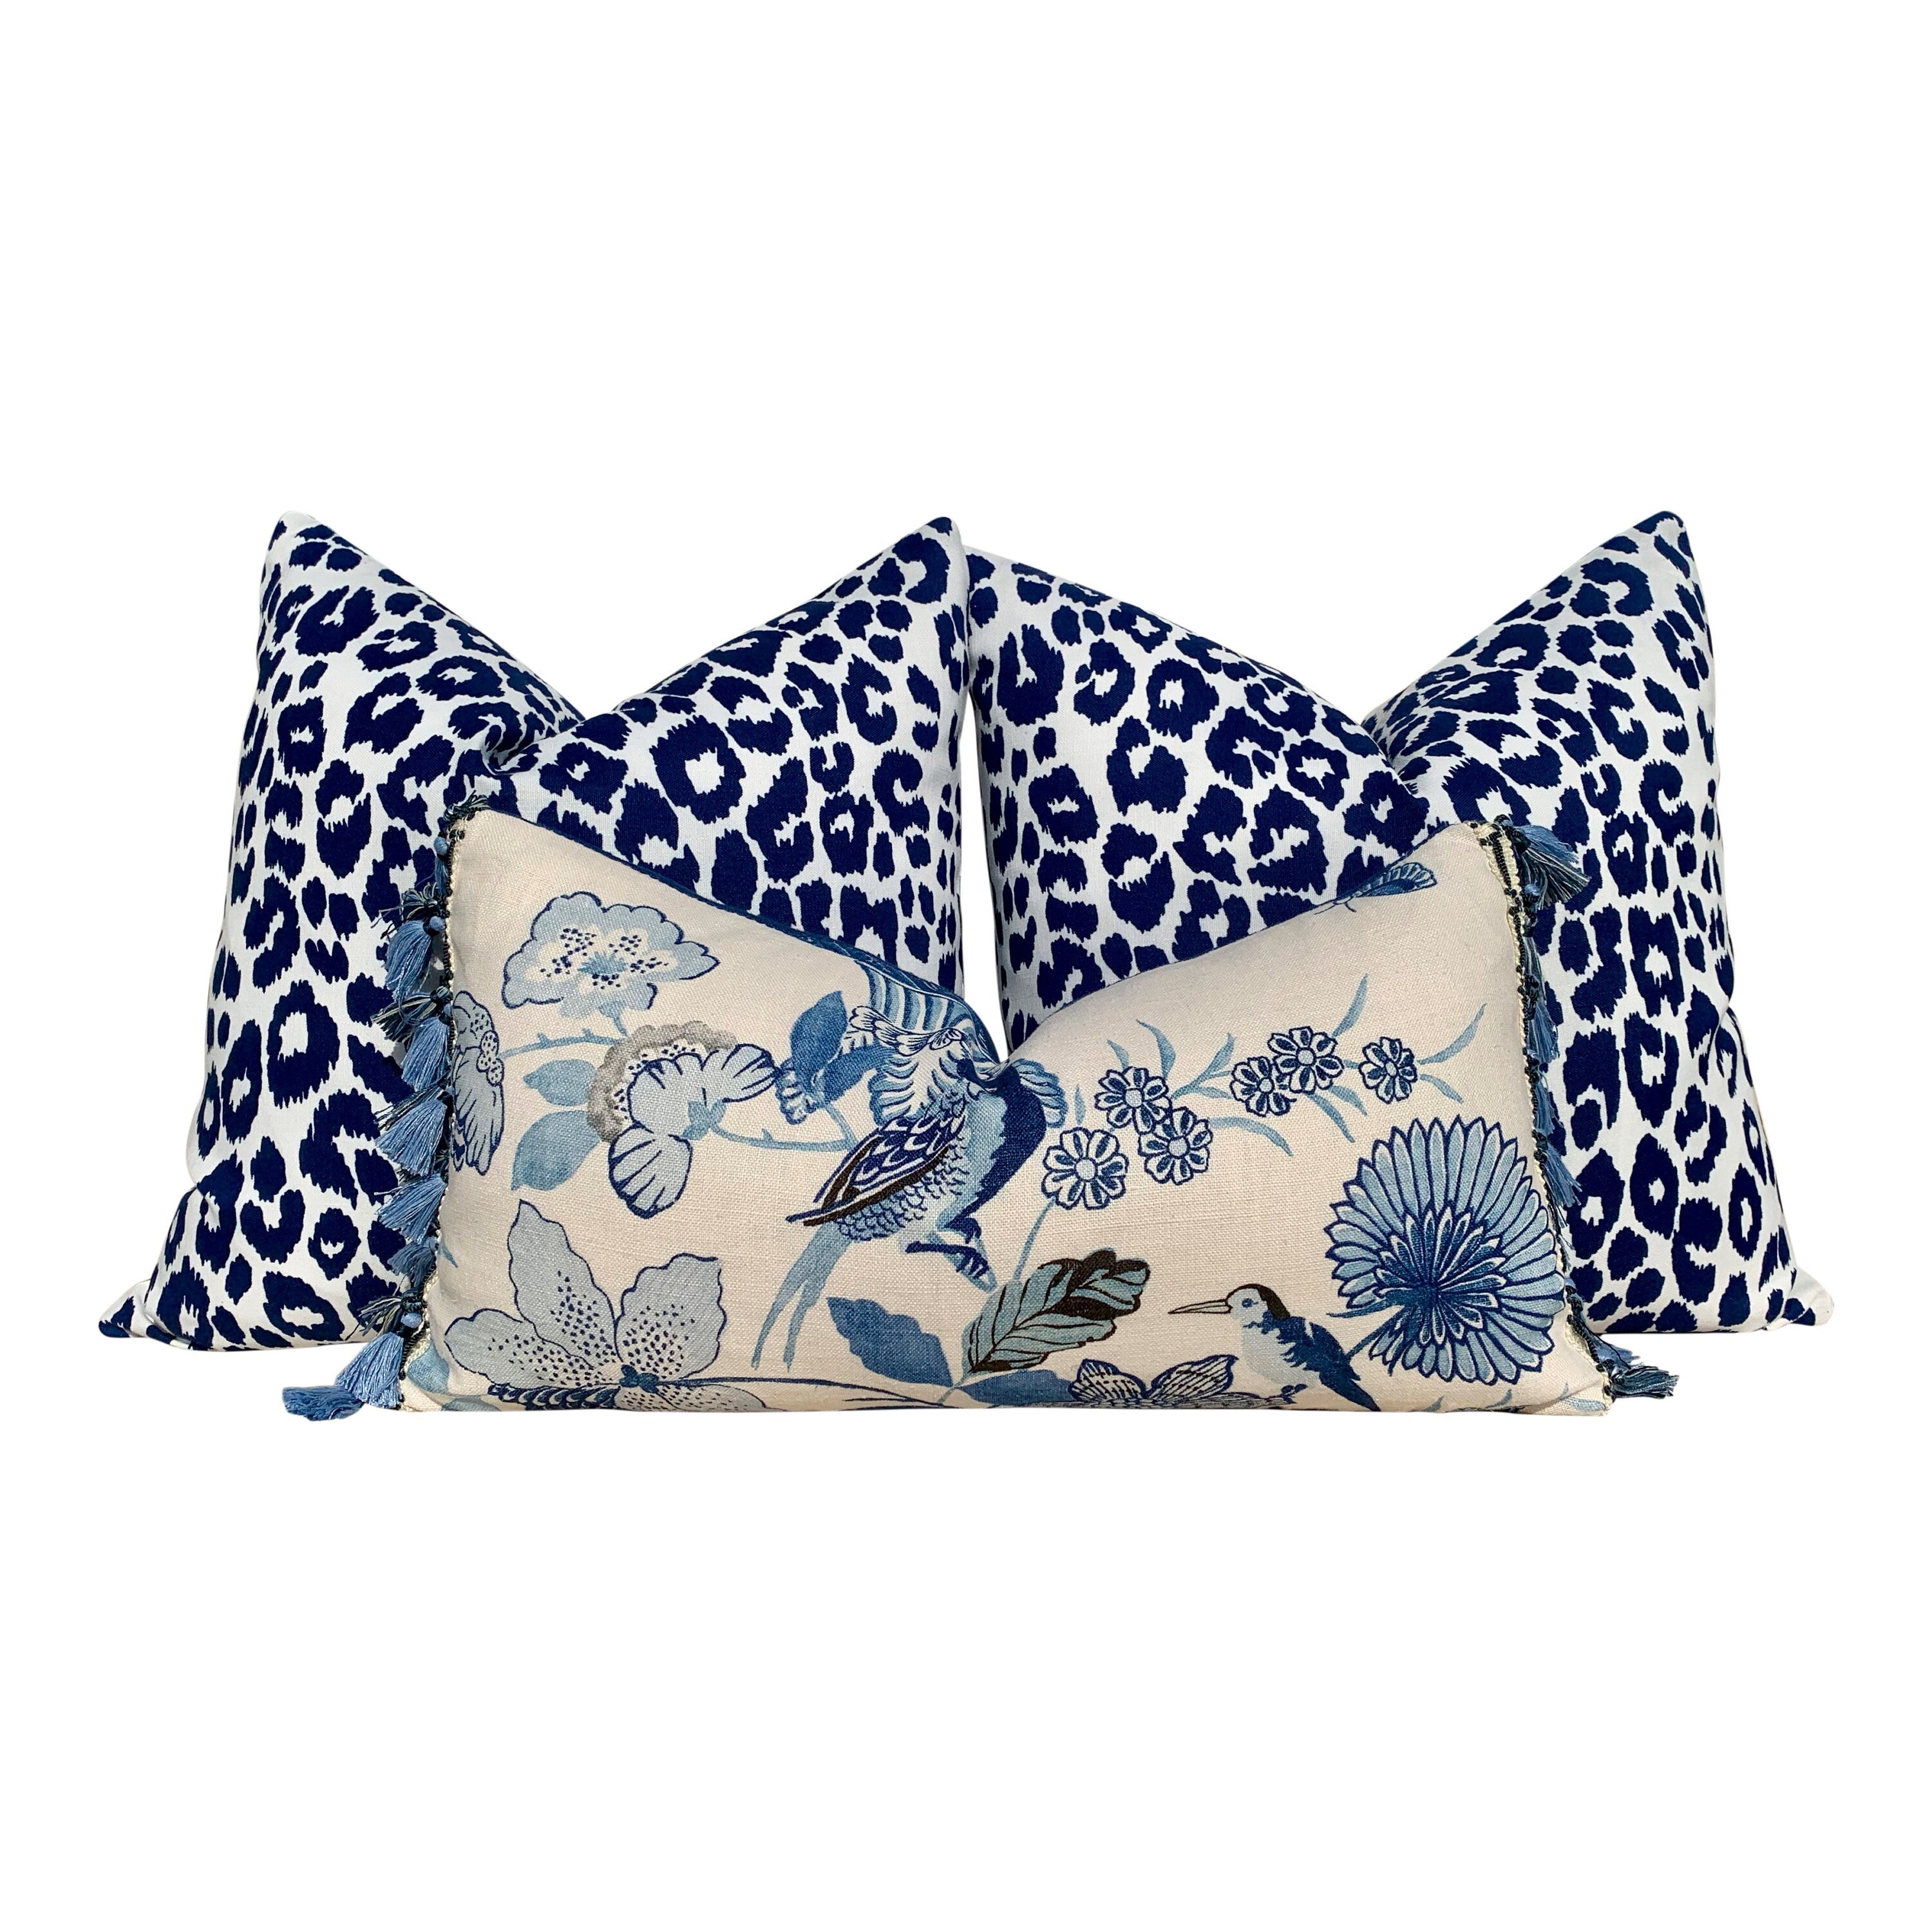 Schumacher Lansdale Bouquet Pillow, BlueTassel Trim. Lumbar Decorative Pillow, Designer pillows, accent cushion cover, bird pillow cover